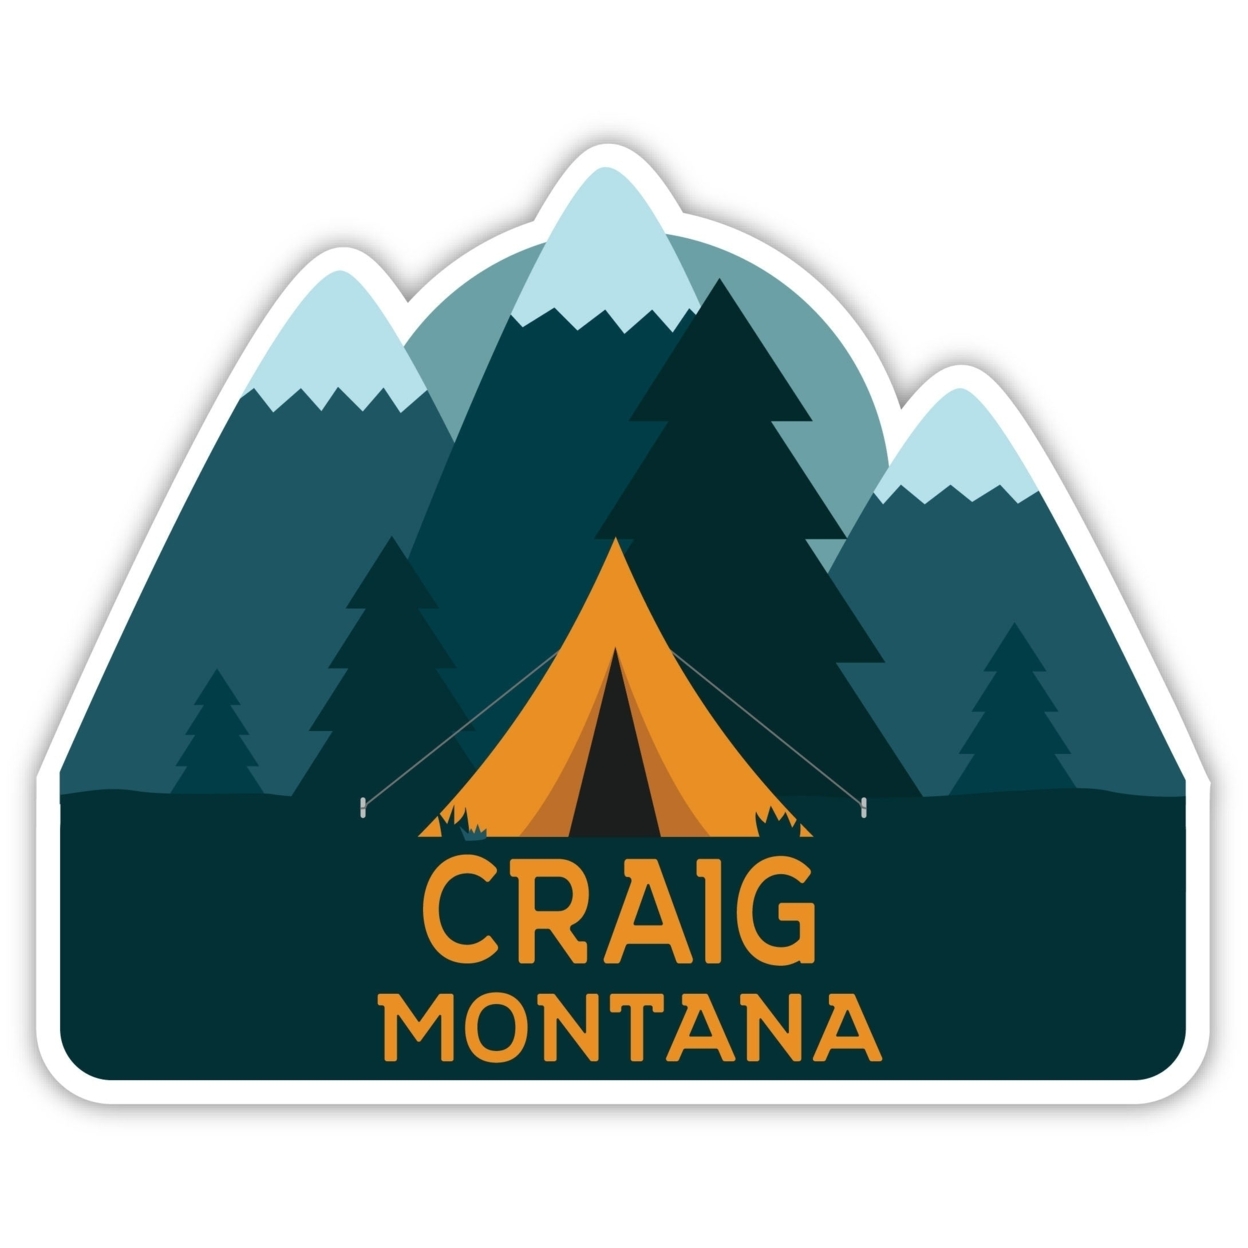 Craig Montana Souvenir Decorative Stickers (Choose Theme And Size) - Single Unit, 8-Inch, Tent